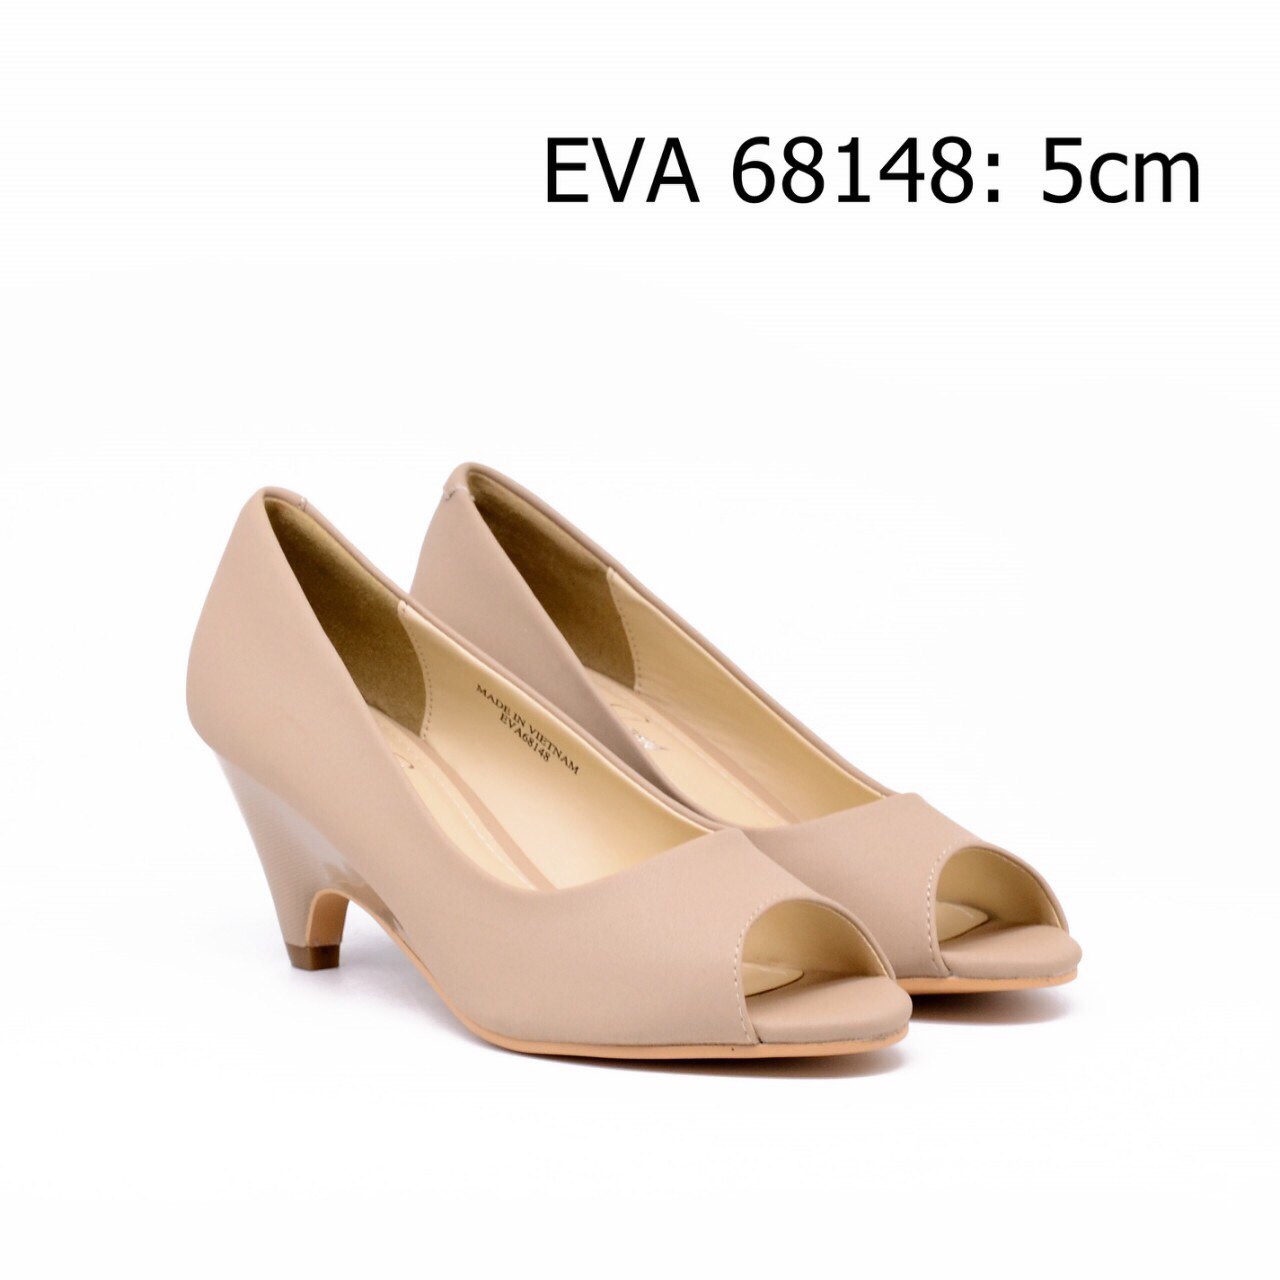 Giày công sở hở mũi EVA68148 cao 5cm.